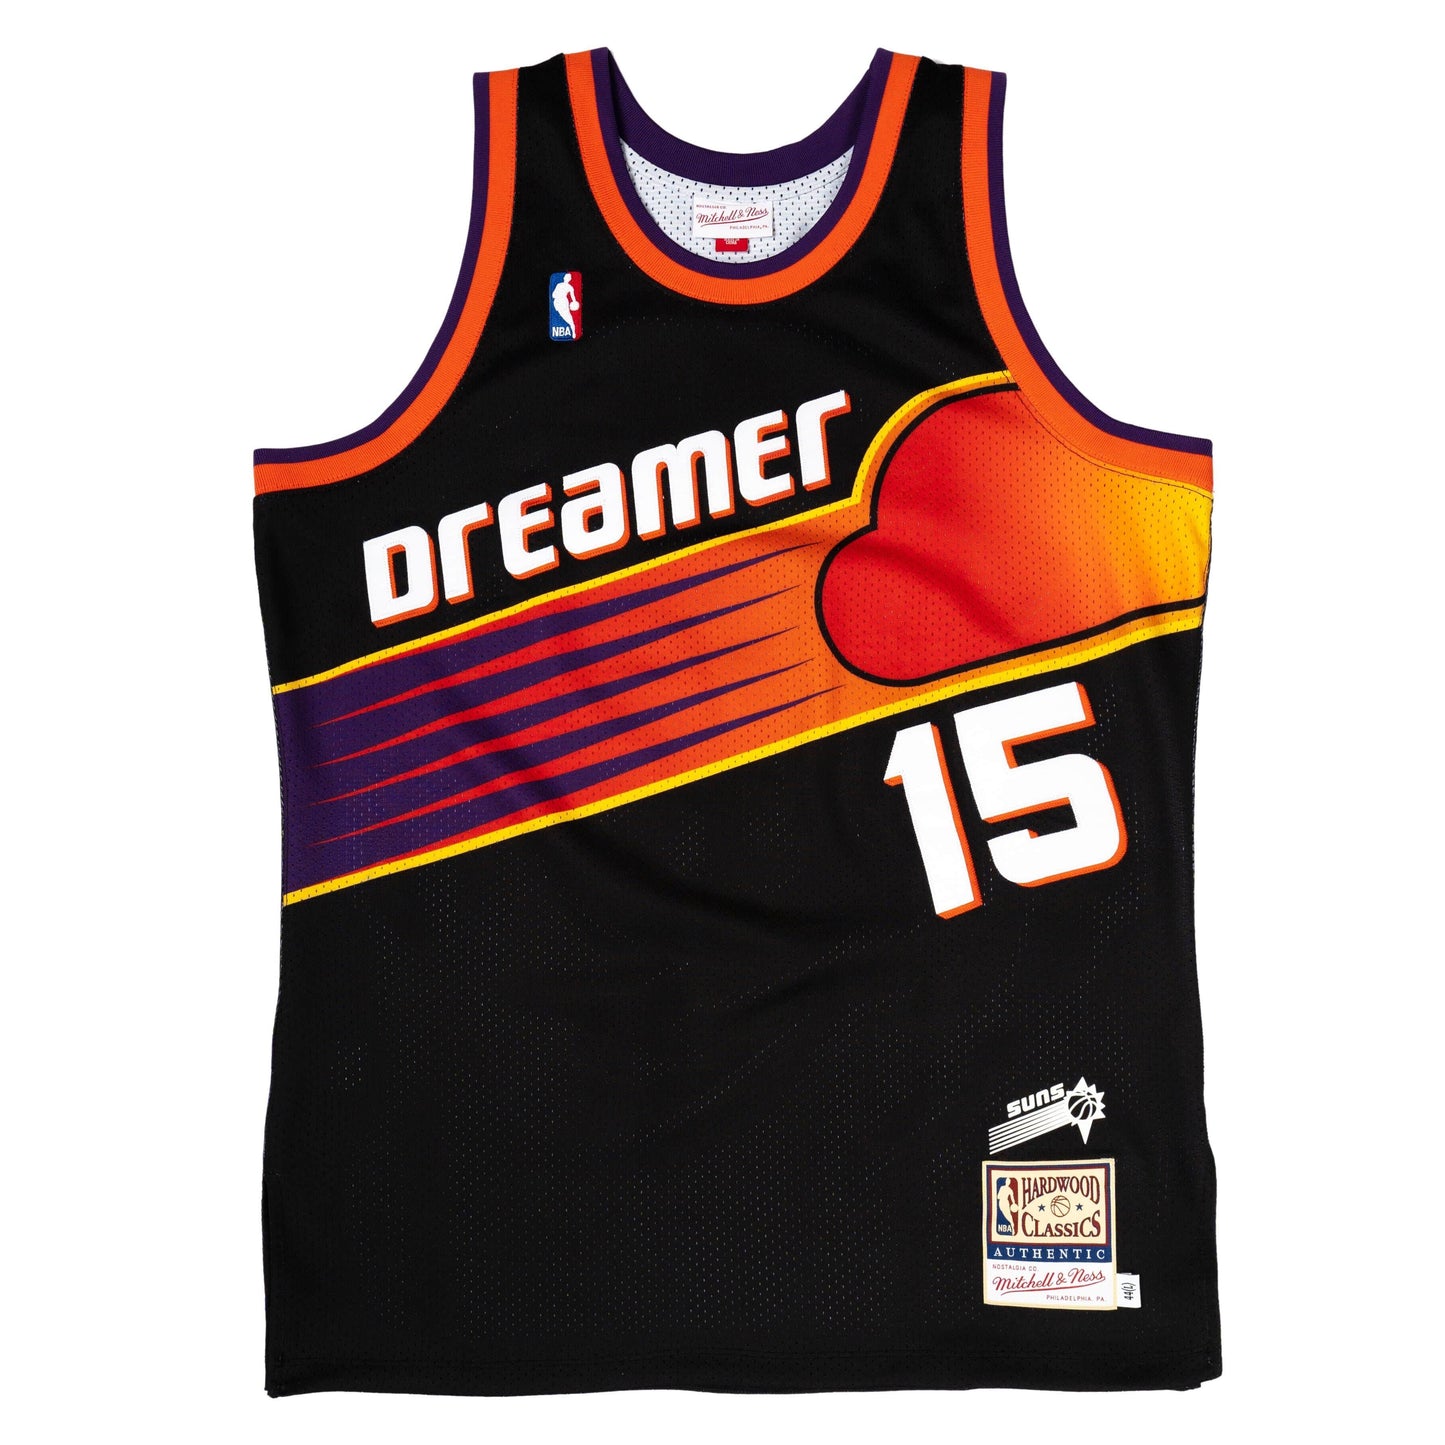 DREAMER x Mitchell &amp; Ness Phoenix Suns Jersey